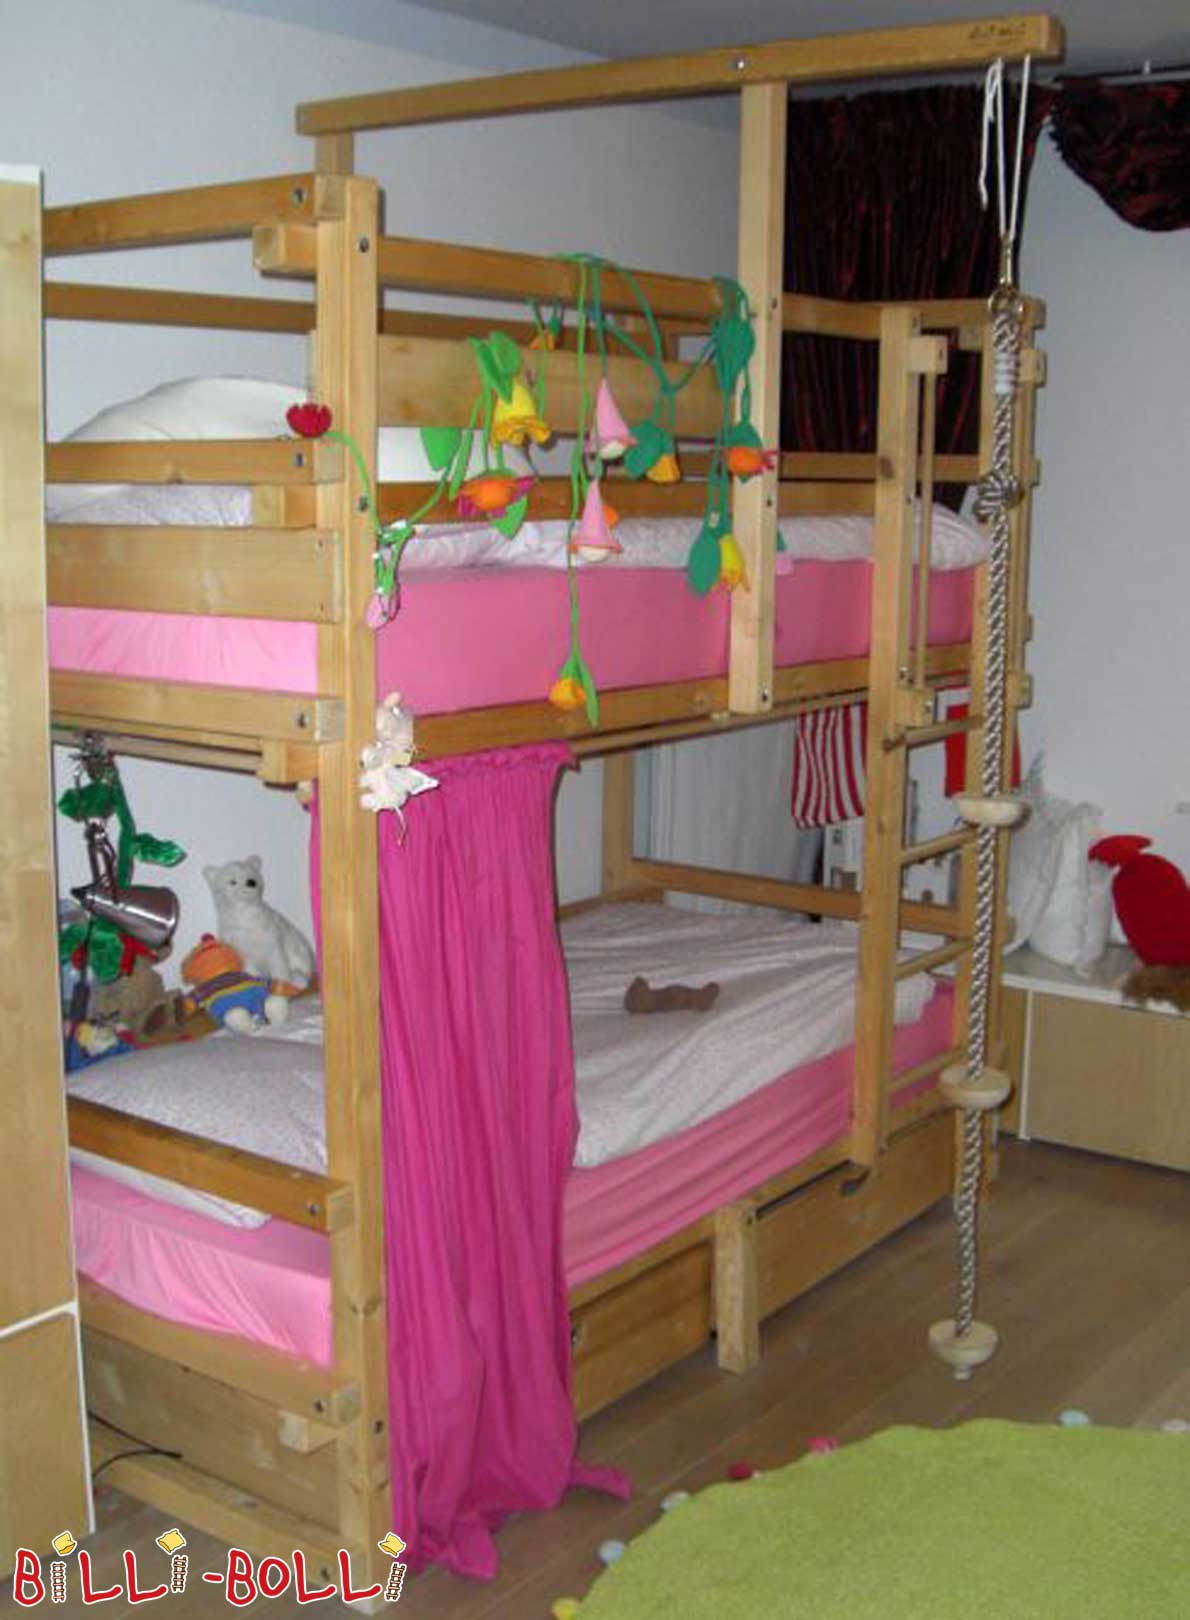 बिली-बोल्ली चारपाई बिस्तर, अनुपचारित स्प्रूस (कोटि: चारपाई बिस्तर का इस्तेमाल किया)